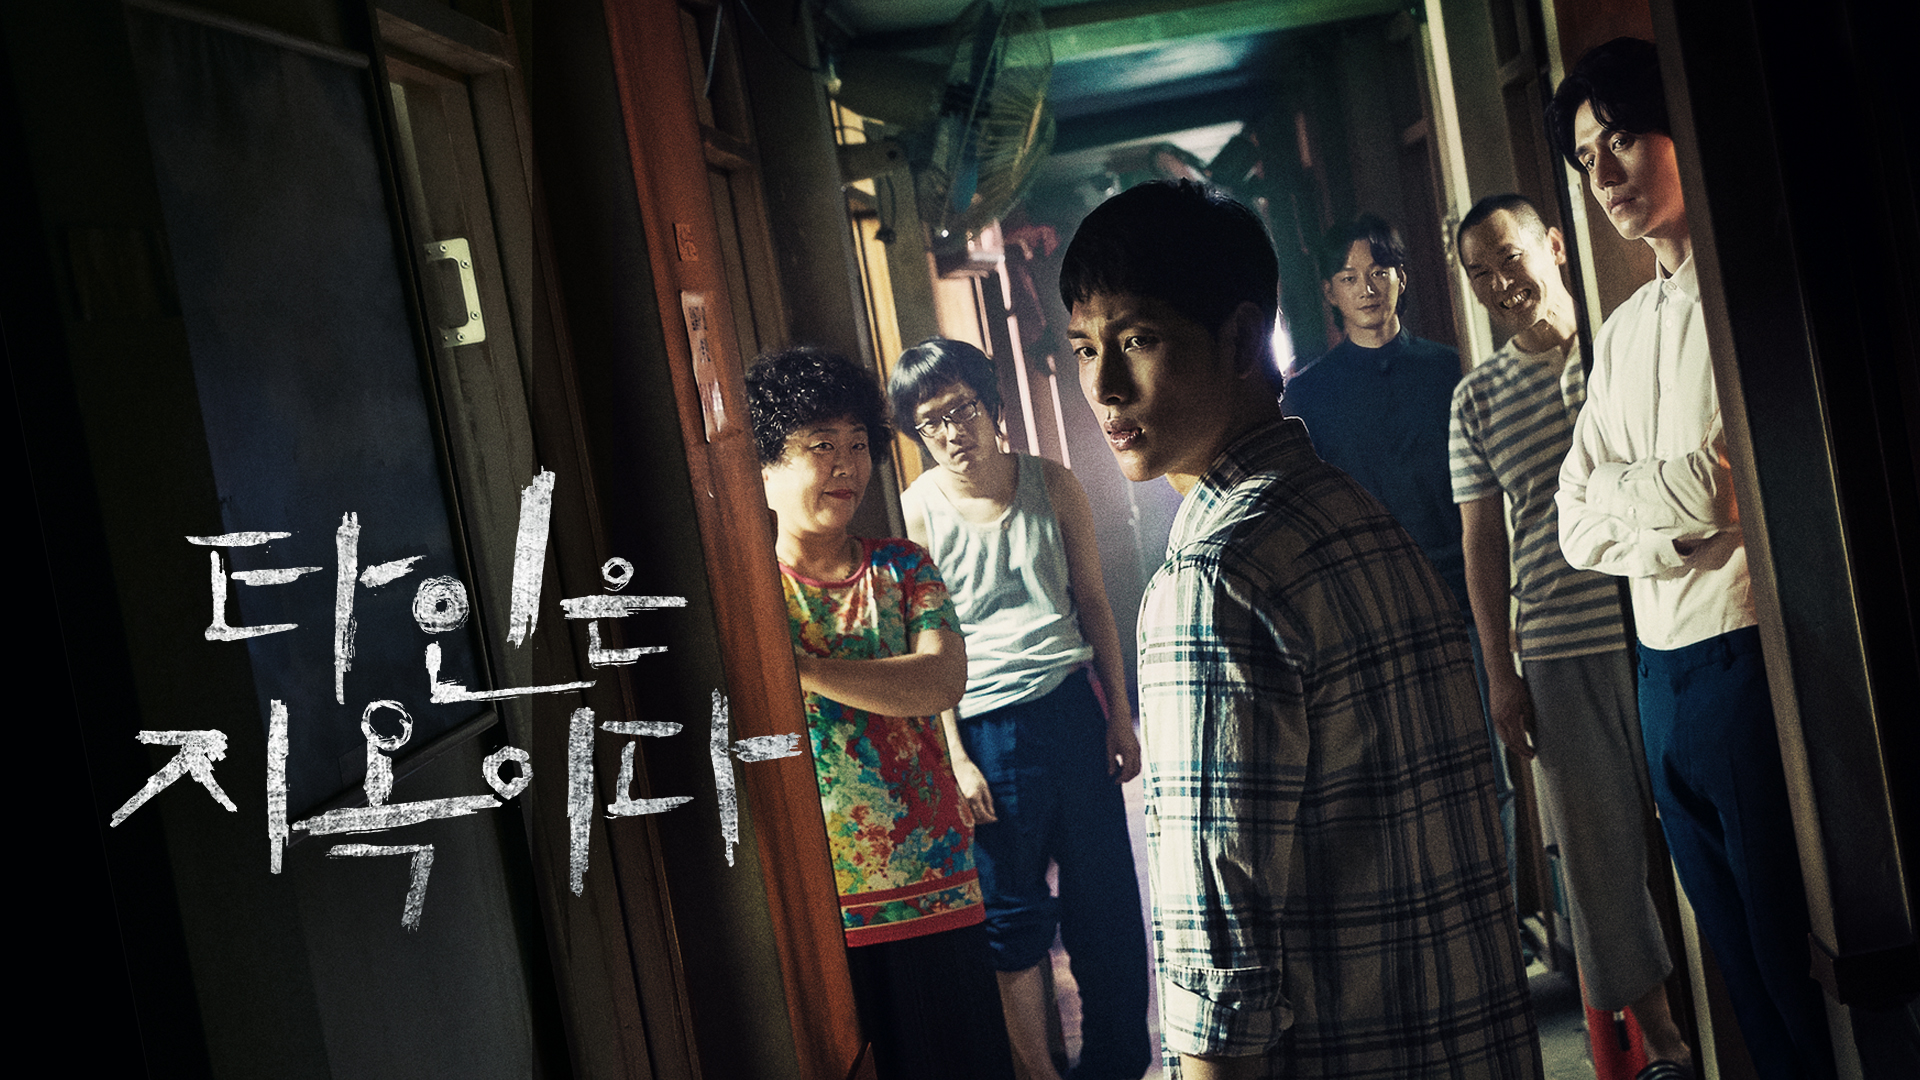 Top 10 phim Hàn được tìm kiếm nhiều nhất trên Naver đầu tháng 10